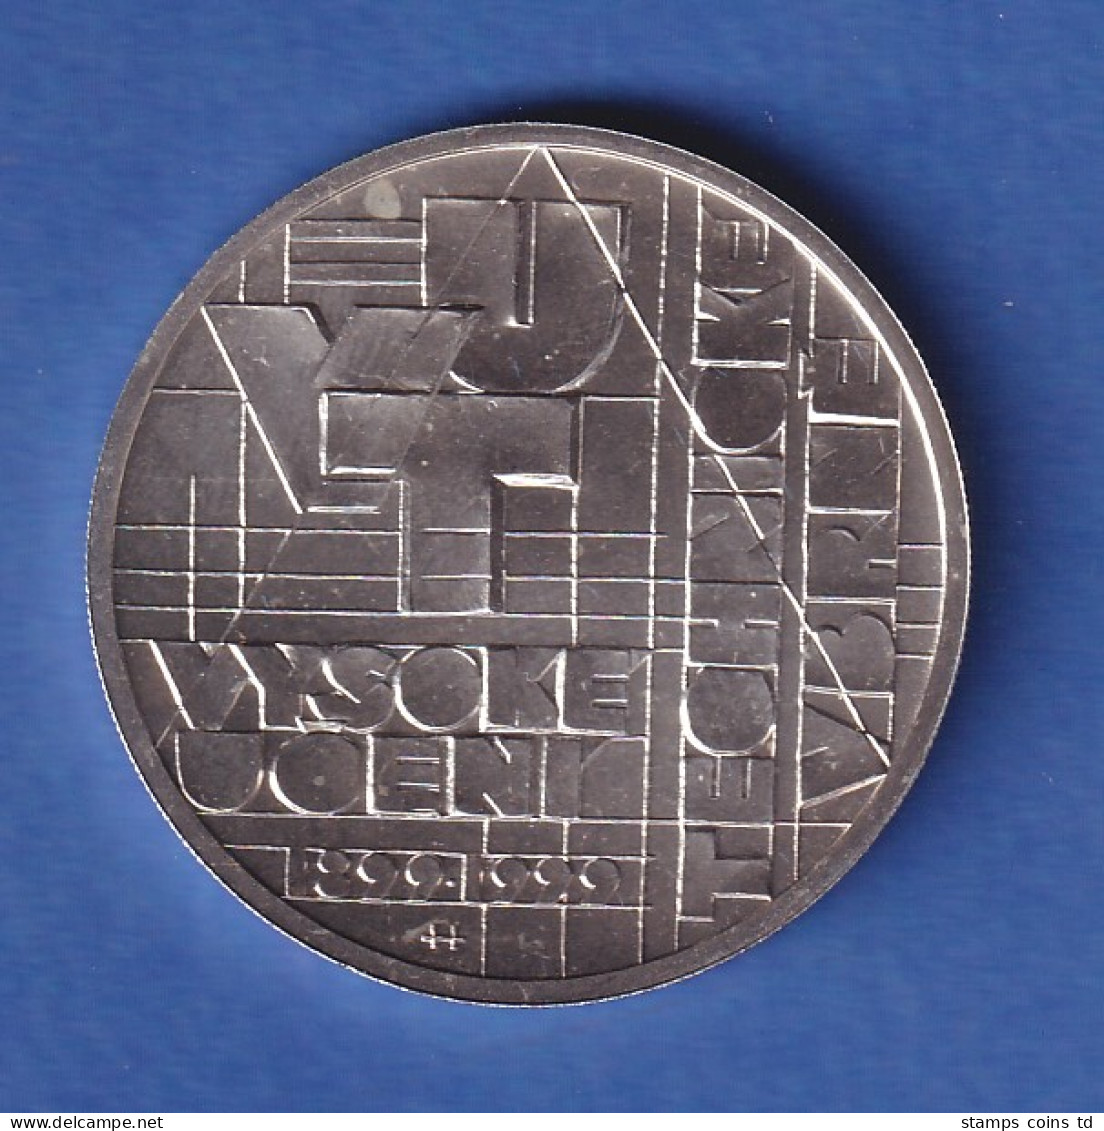 Tschechien 1999 Silbermünze 200 Kronen 100 Jahre Technische Universität Brünn St - Tsjechië